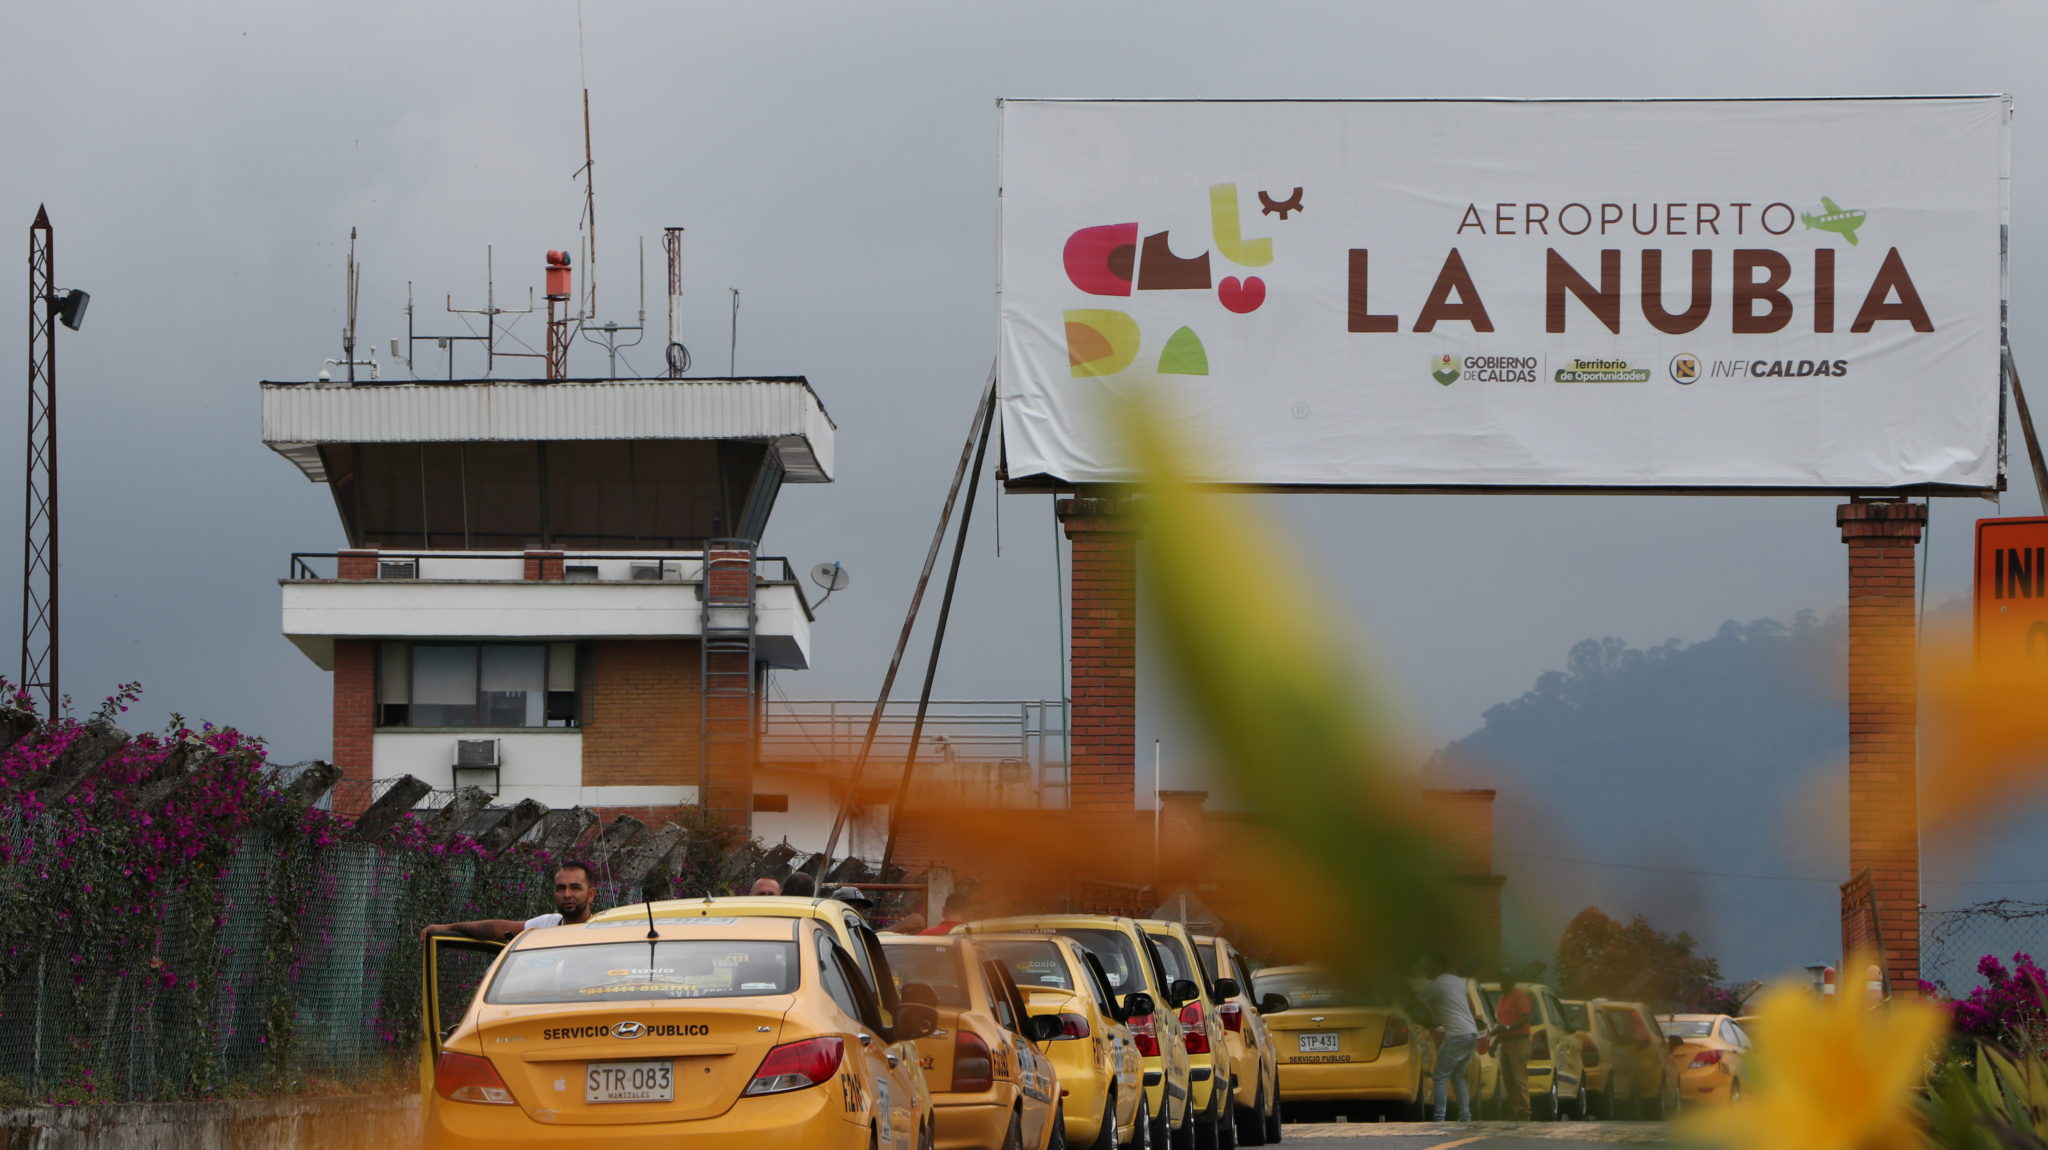 El Aeropuerto La Nubia tendrá vuelo a primera hora hacia Bogotá